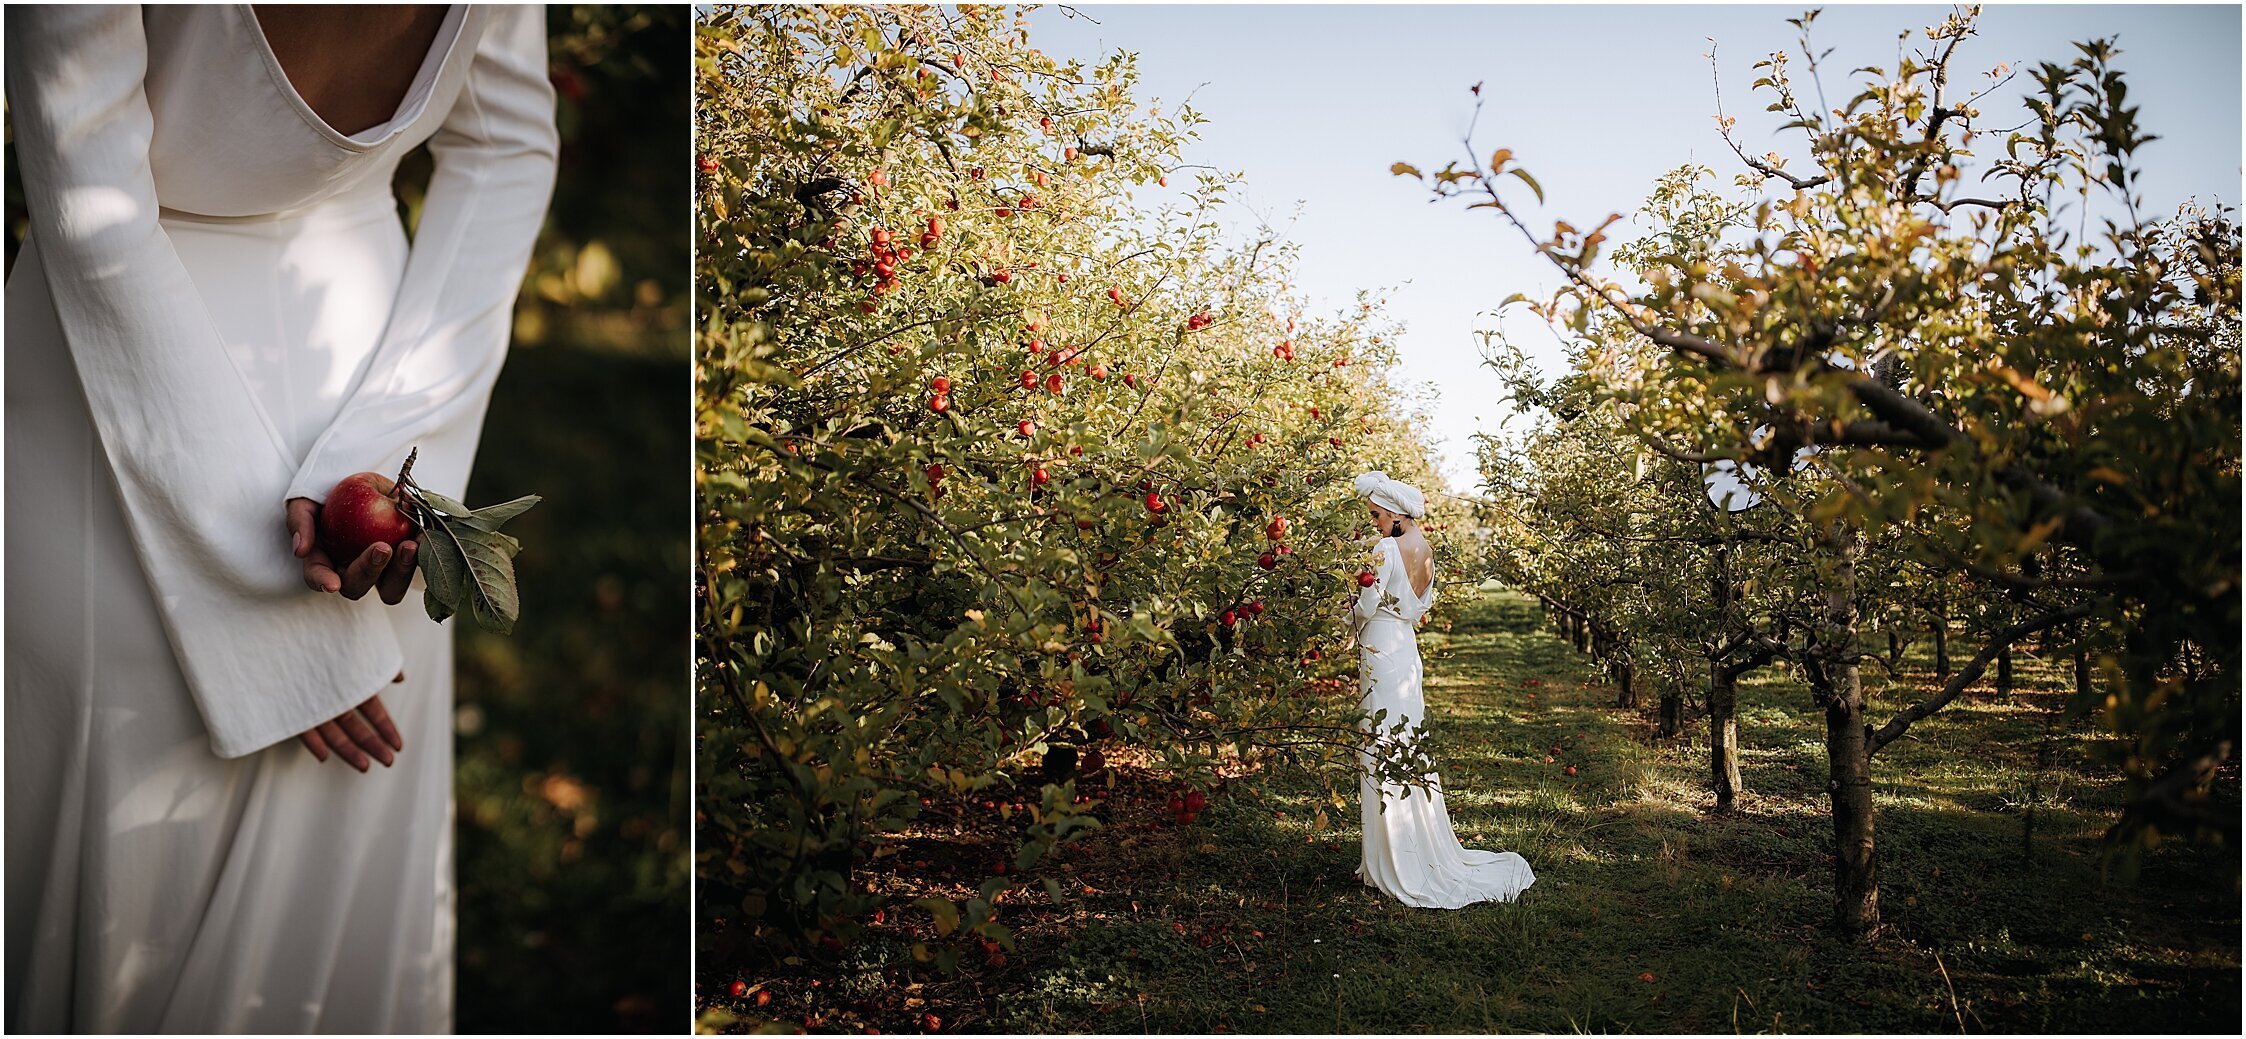 Zanda+Auckland+wedding+photographer+unique+portrait+photoshoot+ideas+autumn+winter+Windmill+apple+orchard+Coatesville+New+Zealand_9.jpeg